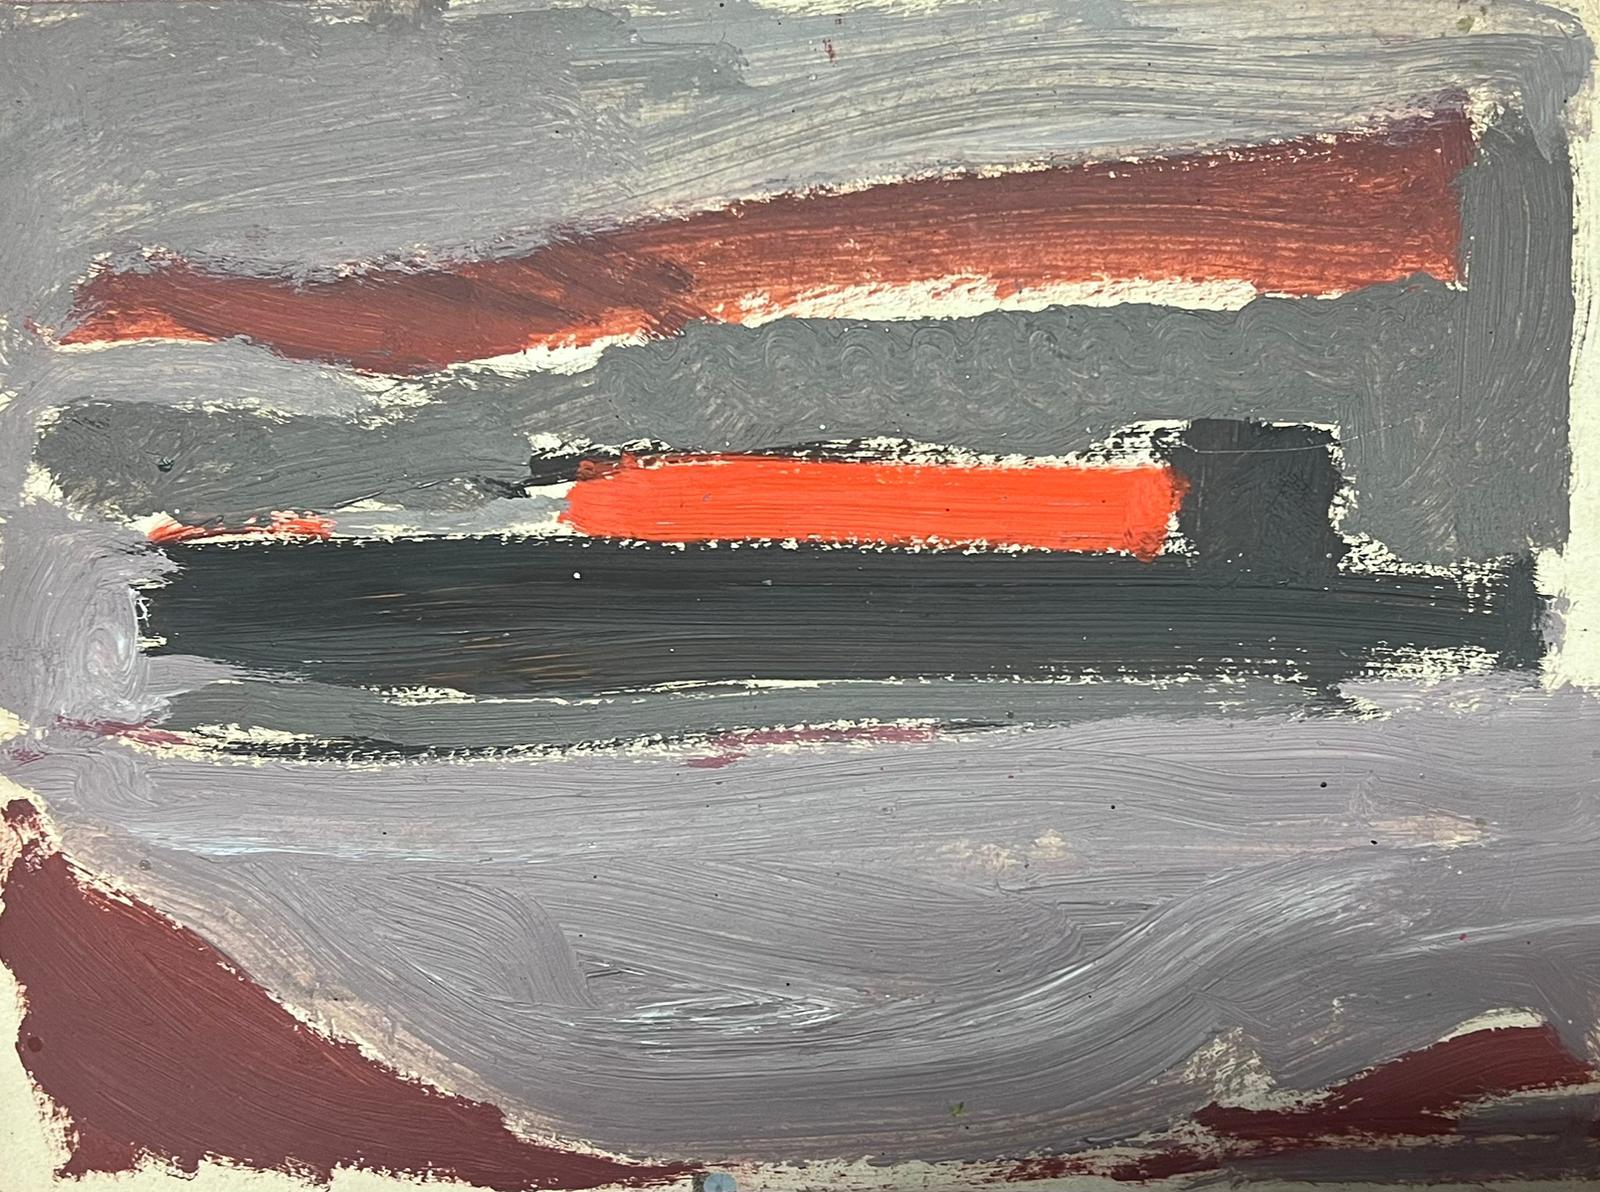 Landscape Painting Elisabeth Hahn - Peinture à l'huile moderniste allemande du 20e siècle, paysage de mer gris et rouge